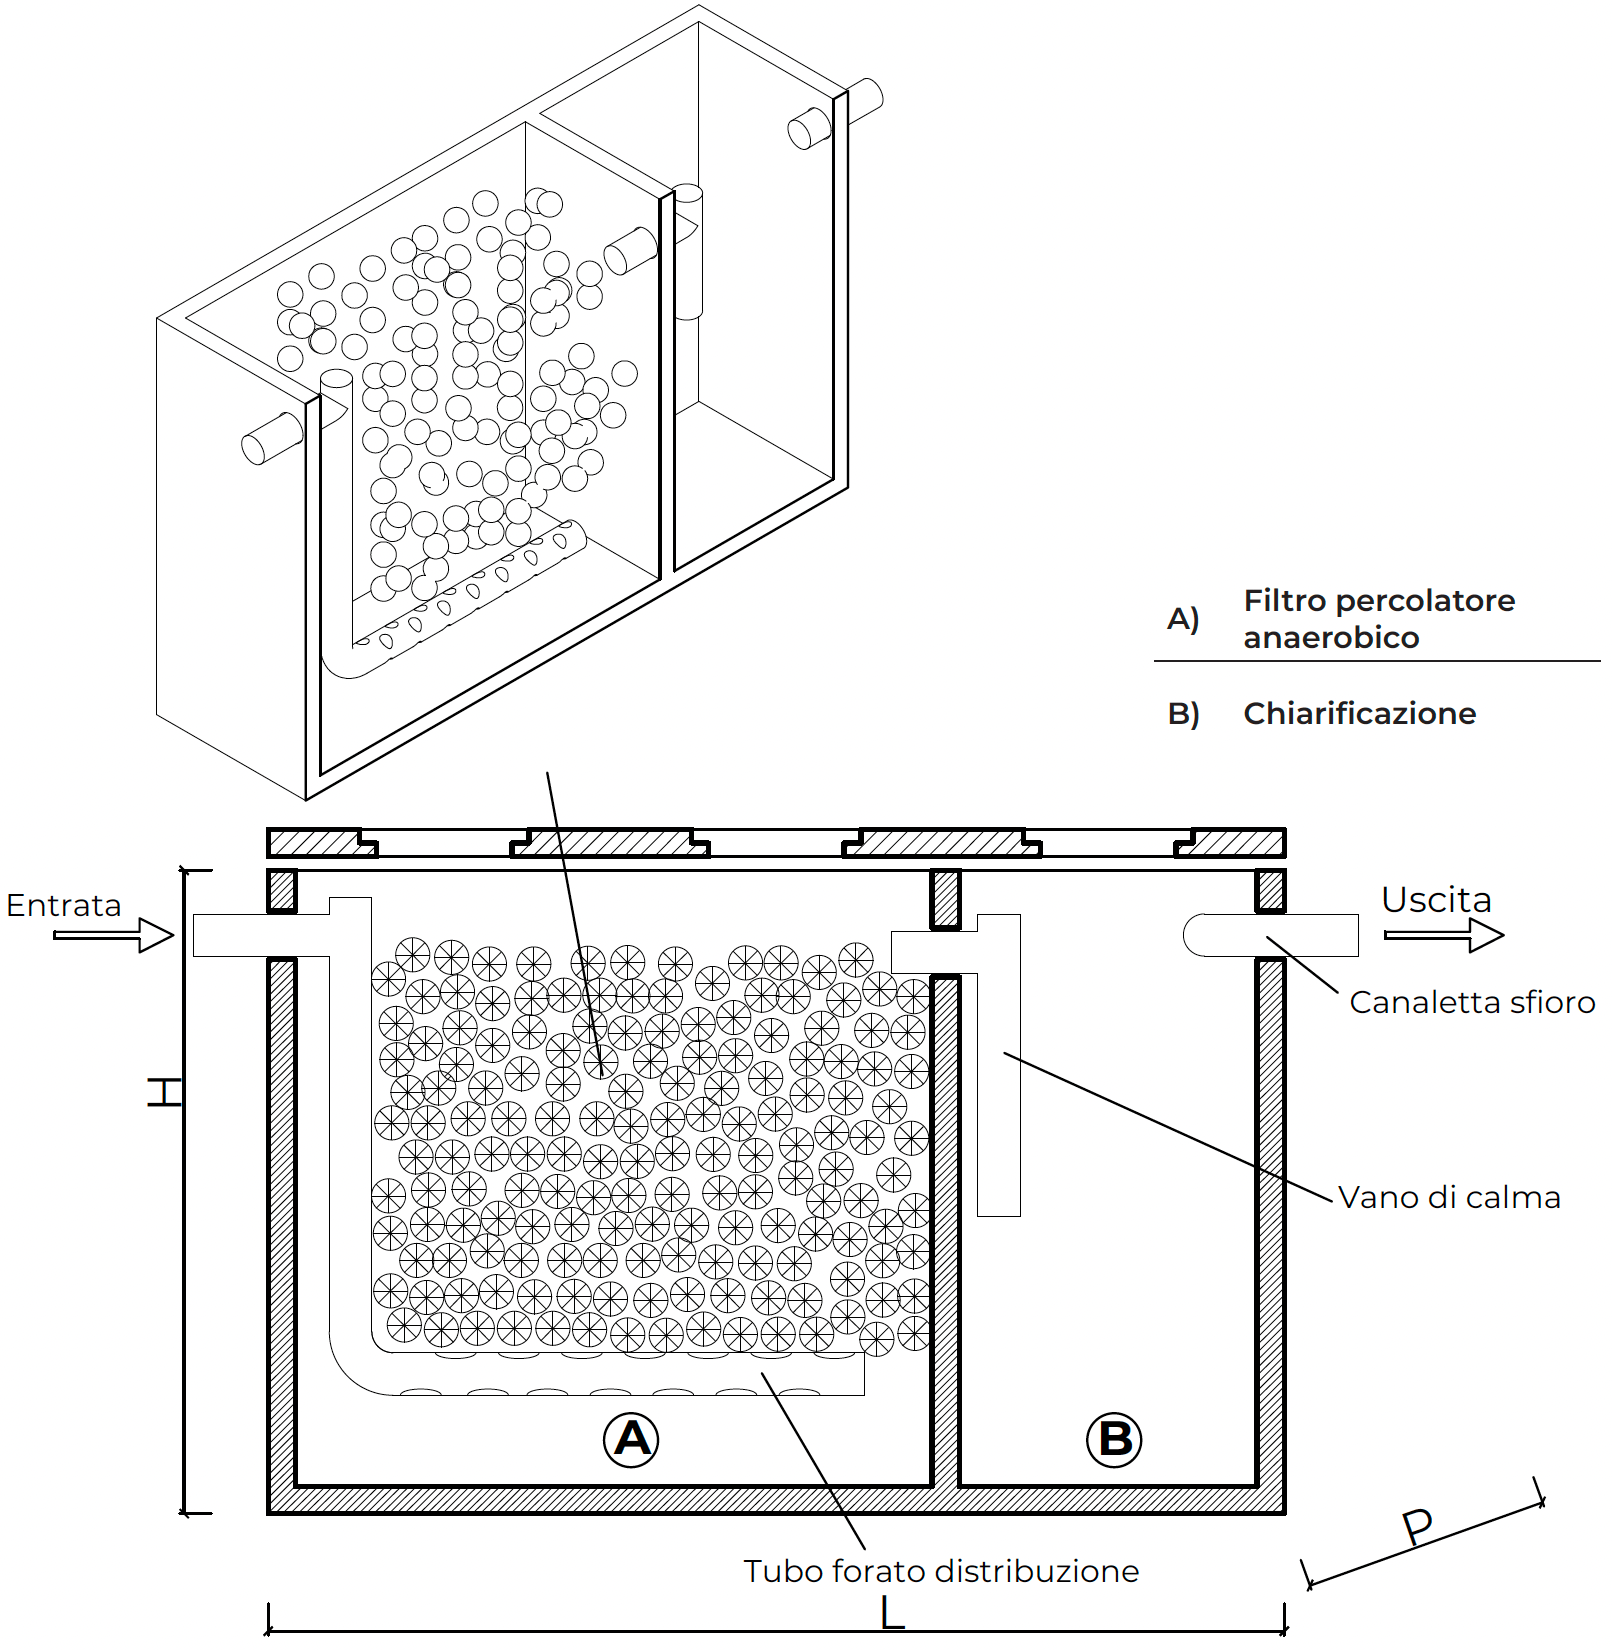 Filtri percolatori anaerobici con pozzetto chiarificatore incorporato